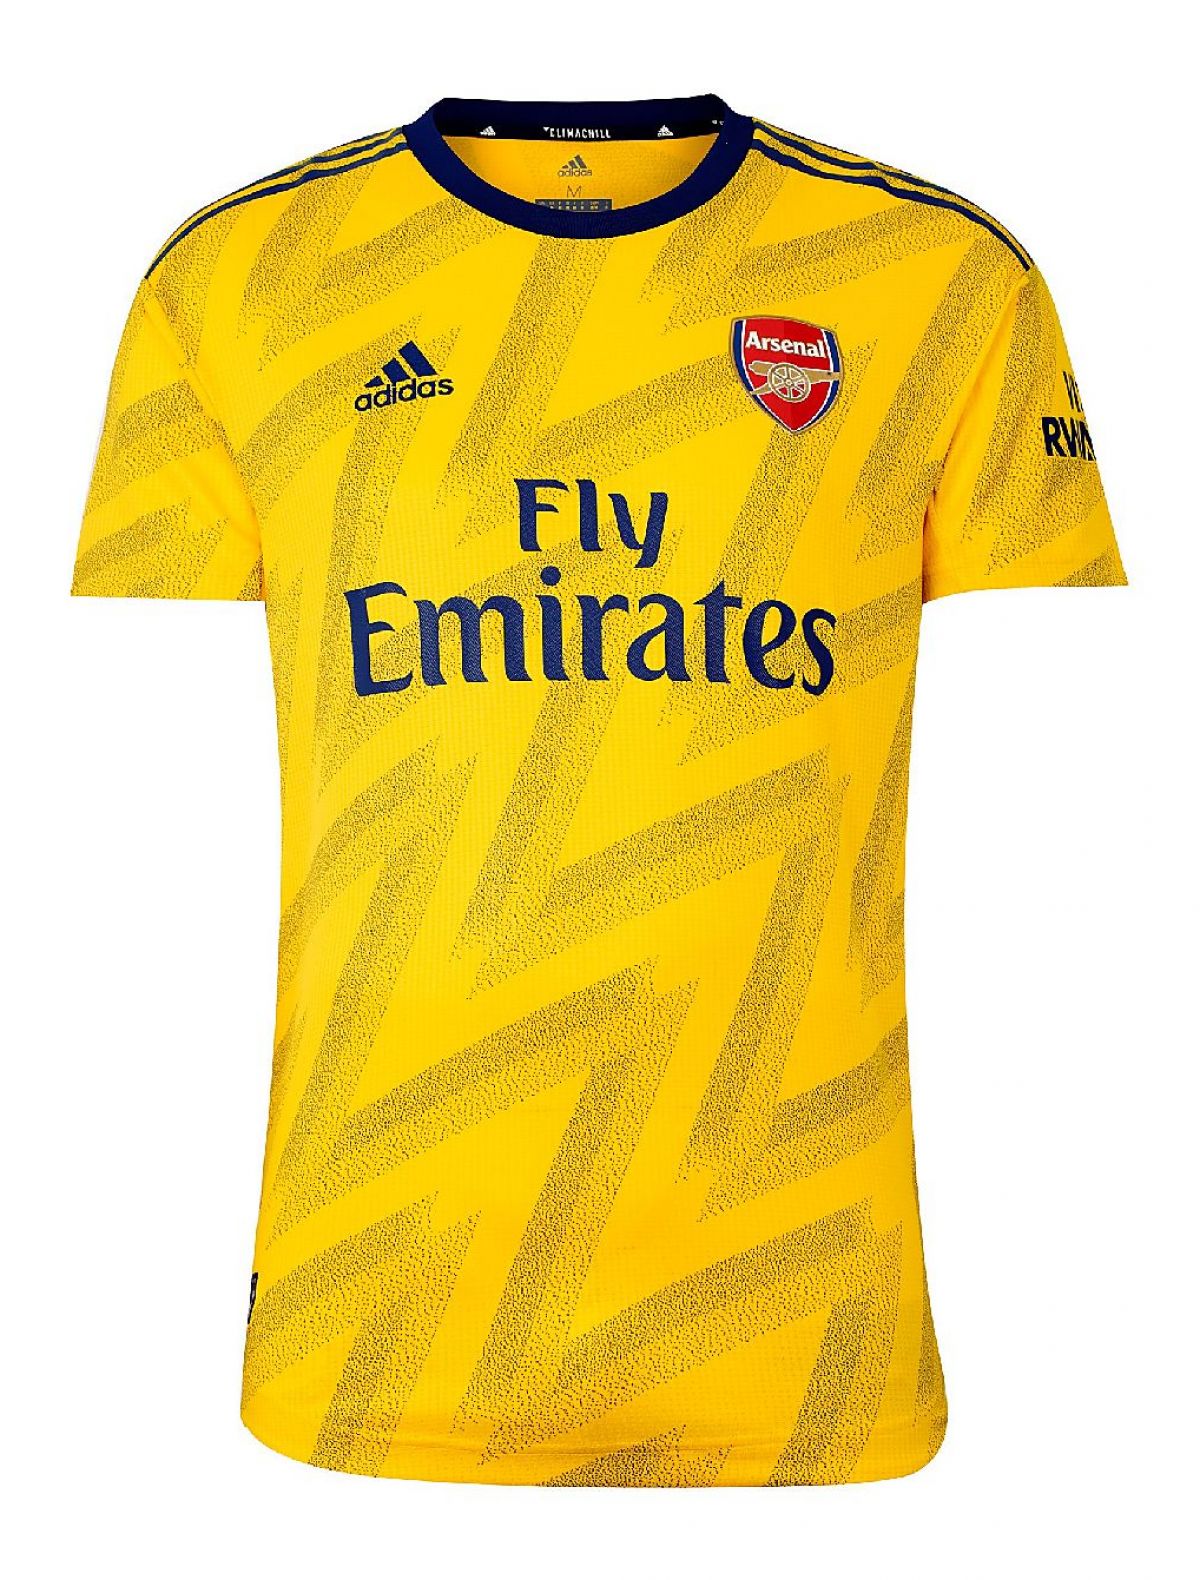 Arsenal FC 19/20 Away Kit